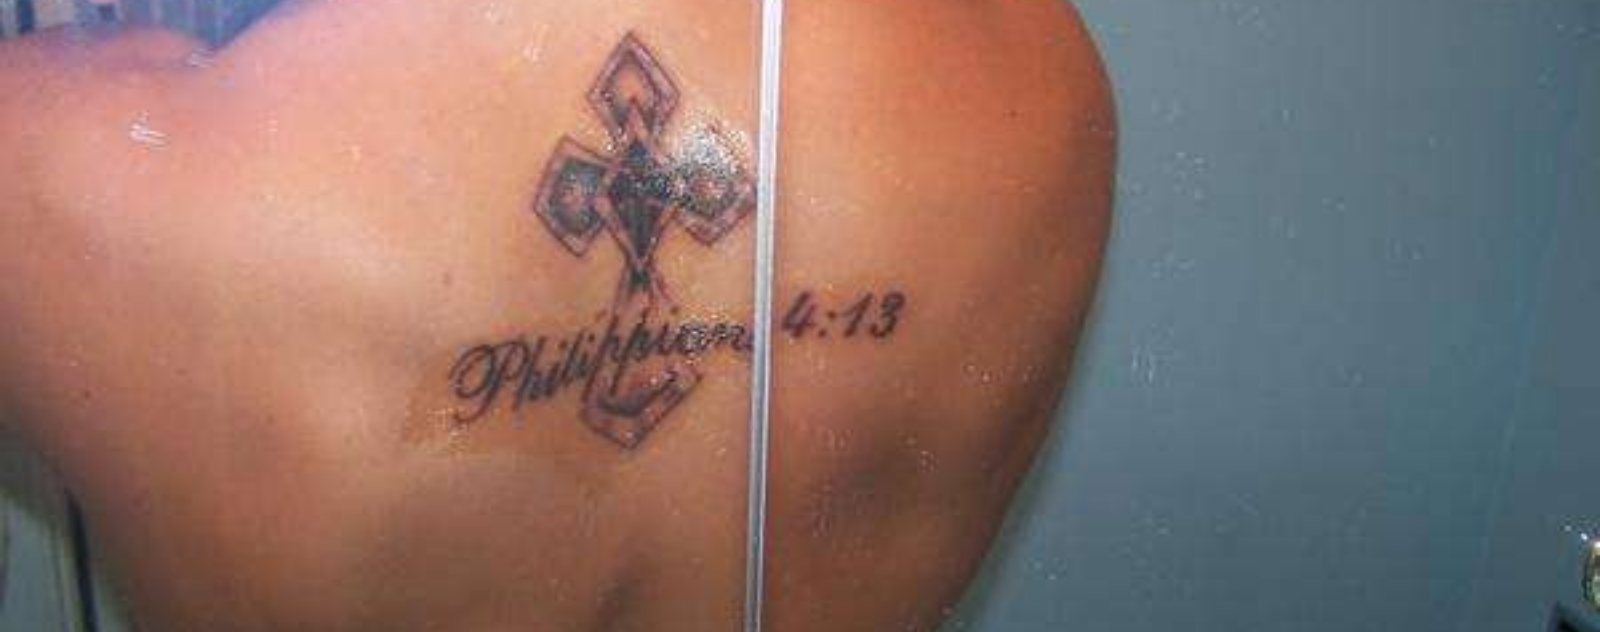 philippians-4-13-tattoo-shoulder-5